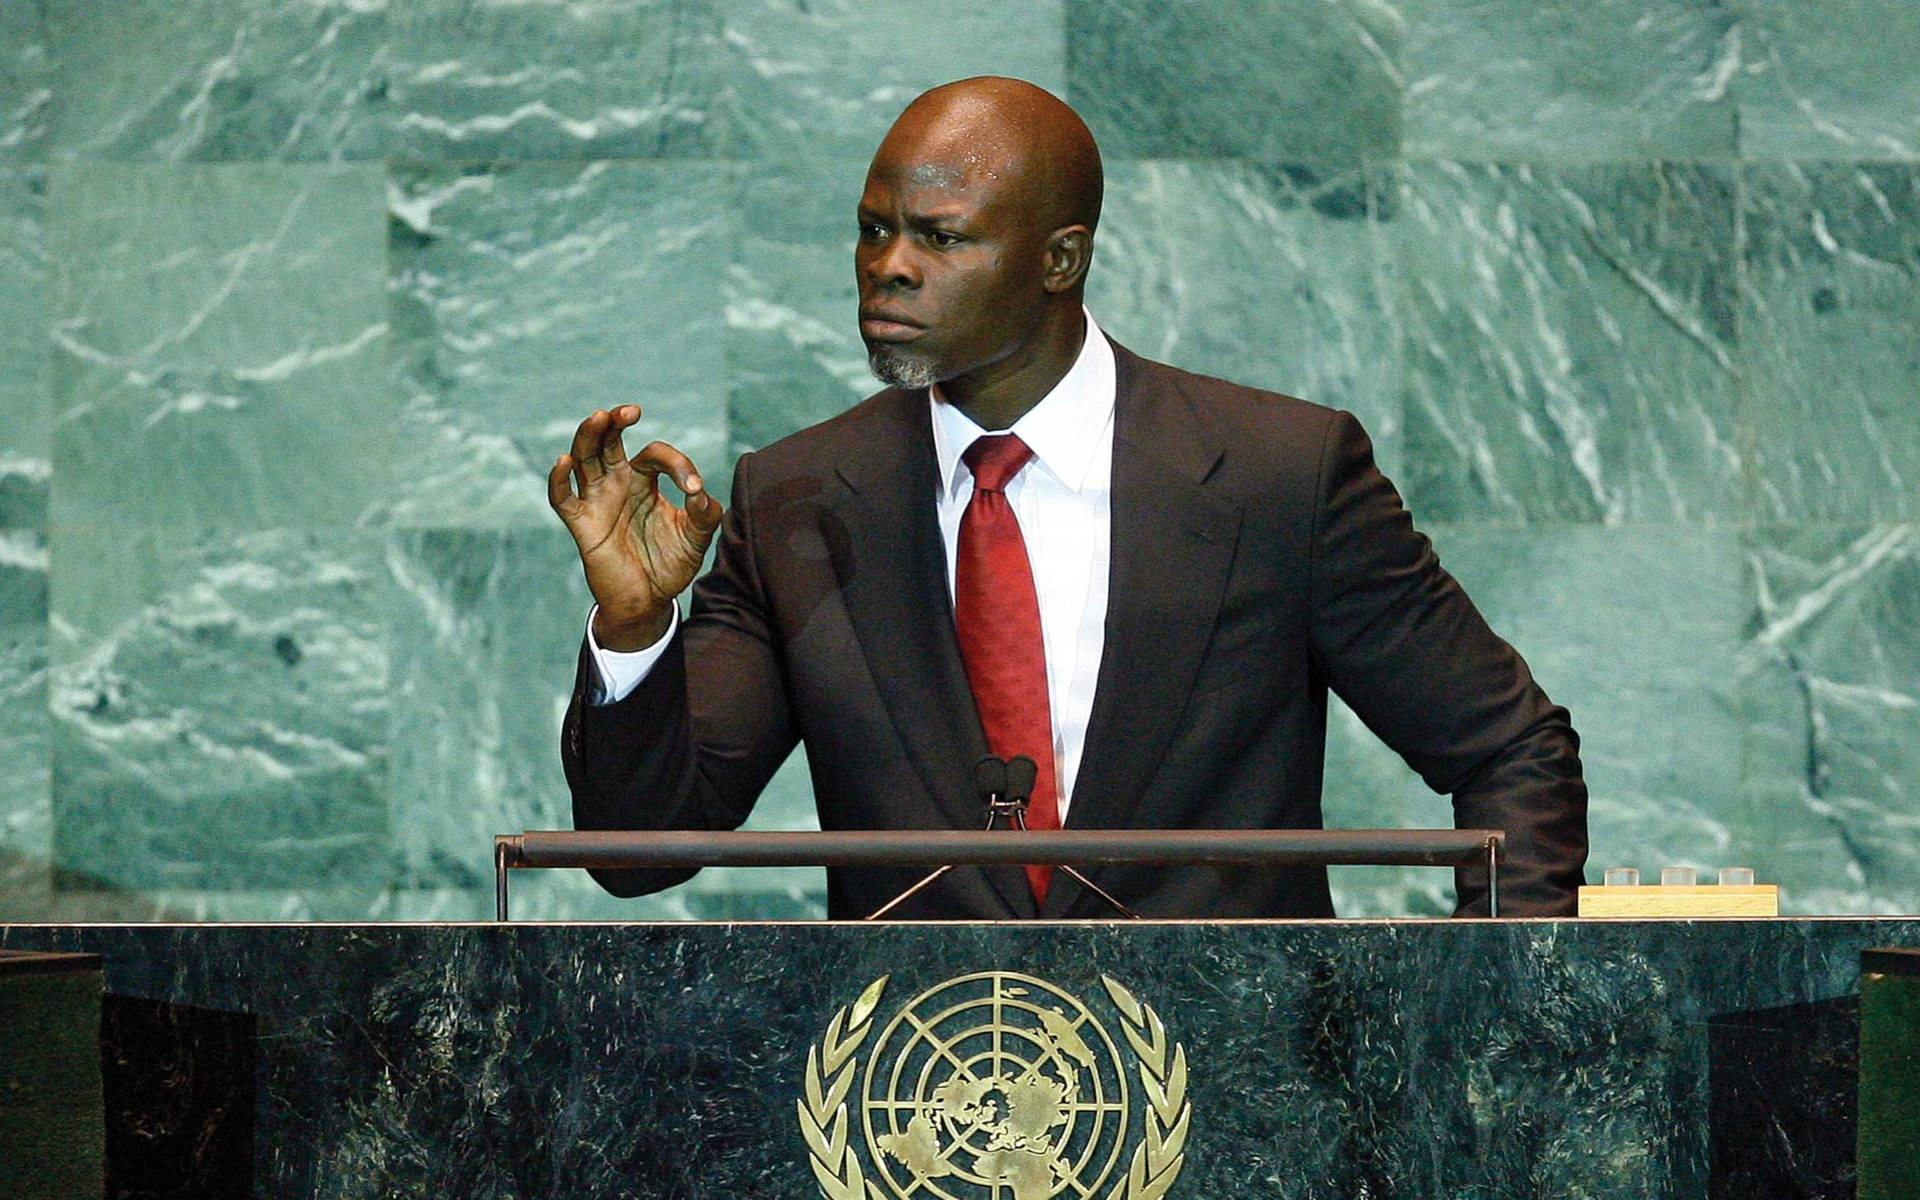 Speaker Djimon Hounsou Wallpaper